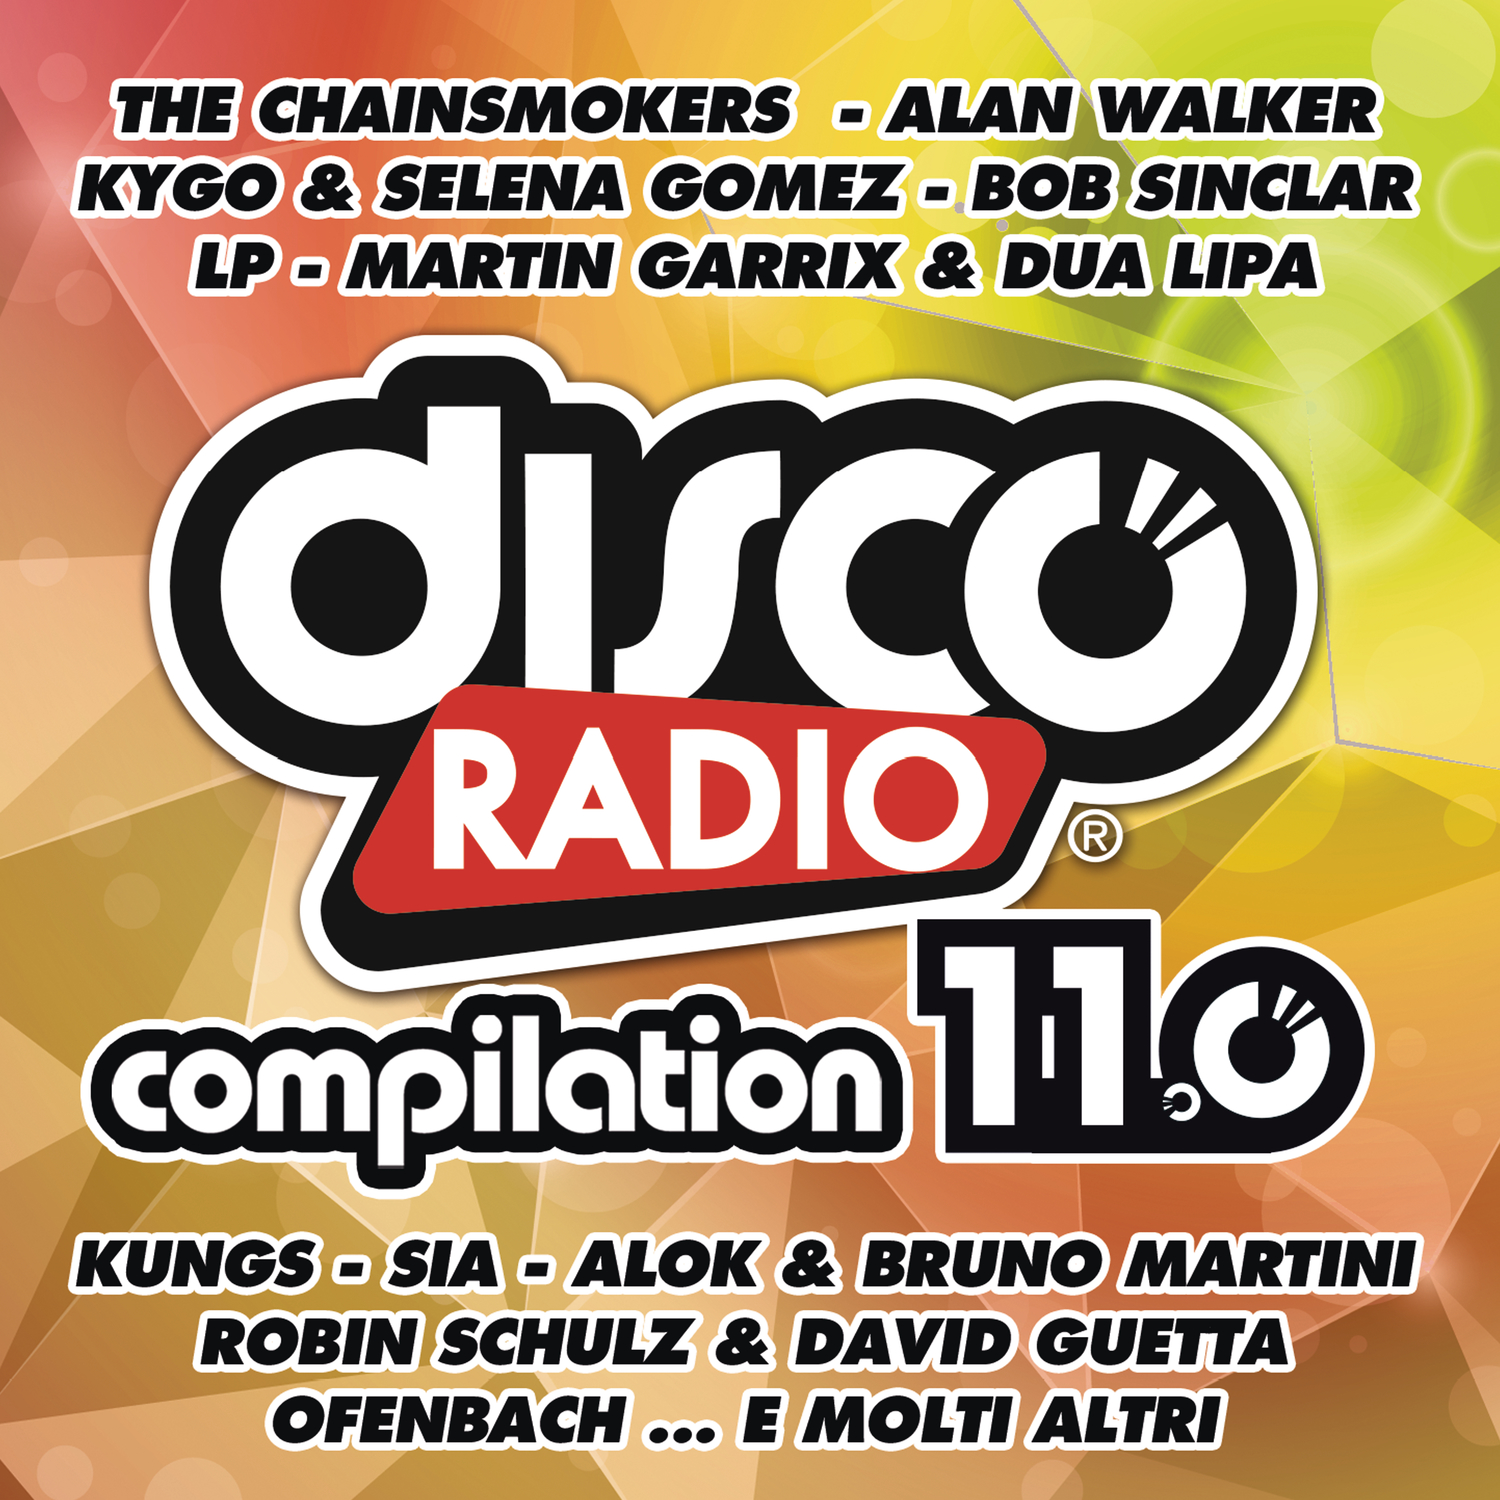 Disco Radio 11.0